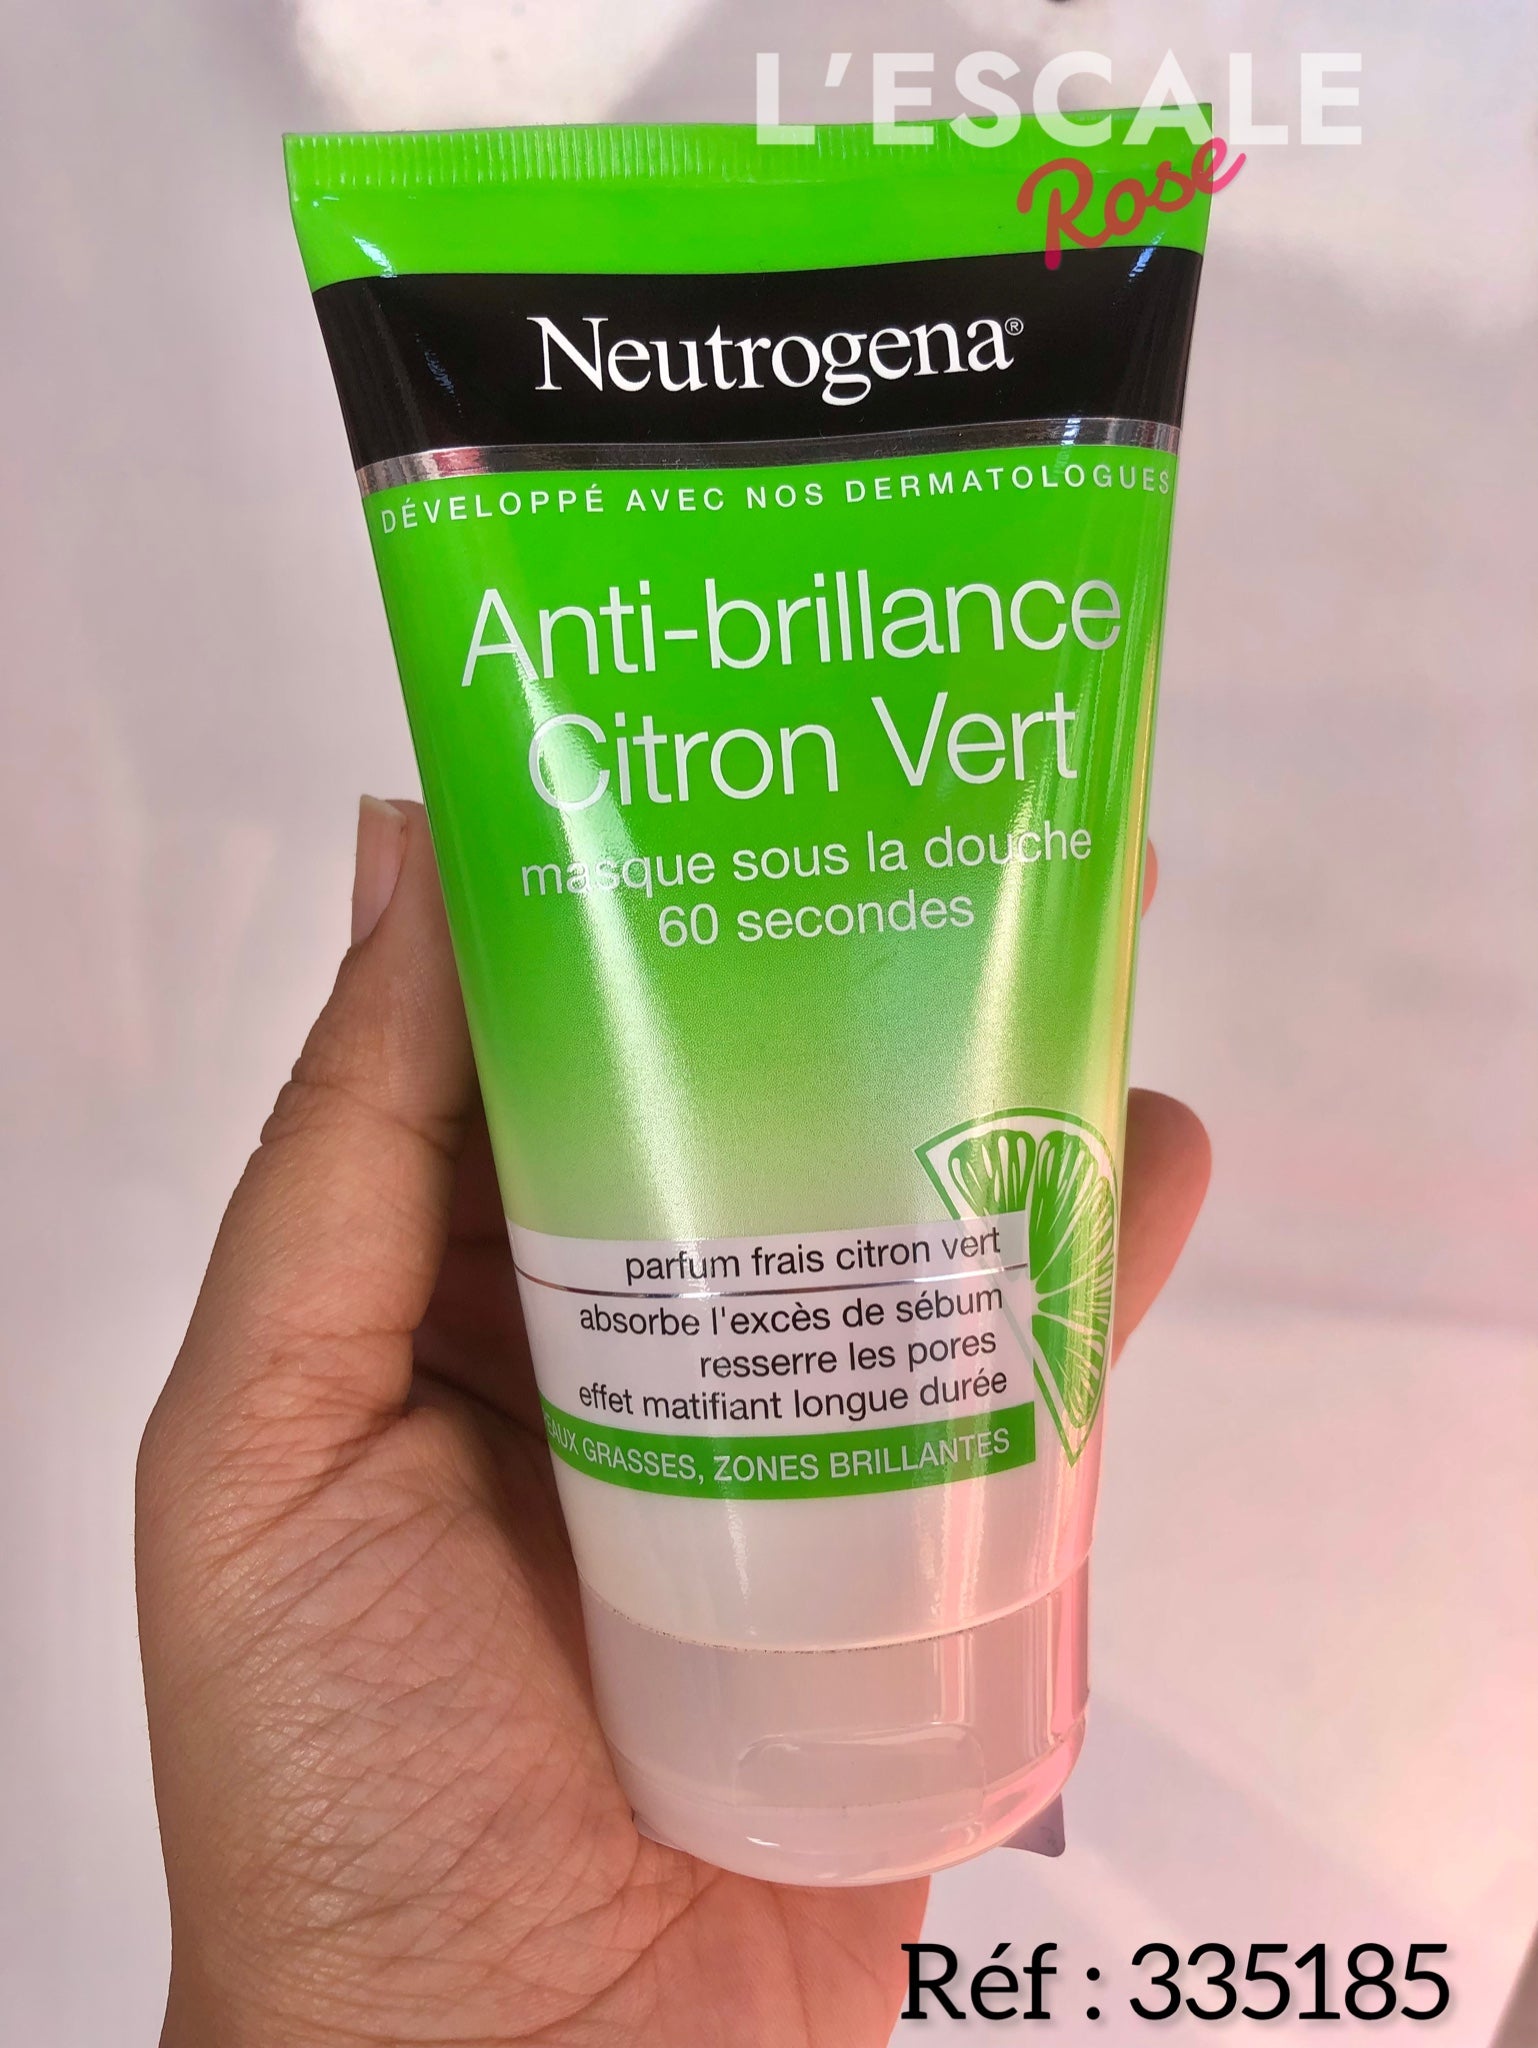 Neutrogena Anti-brillance Citron Vert : Masque sous la douche 60 secondes